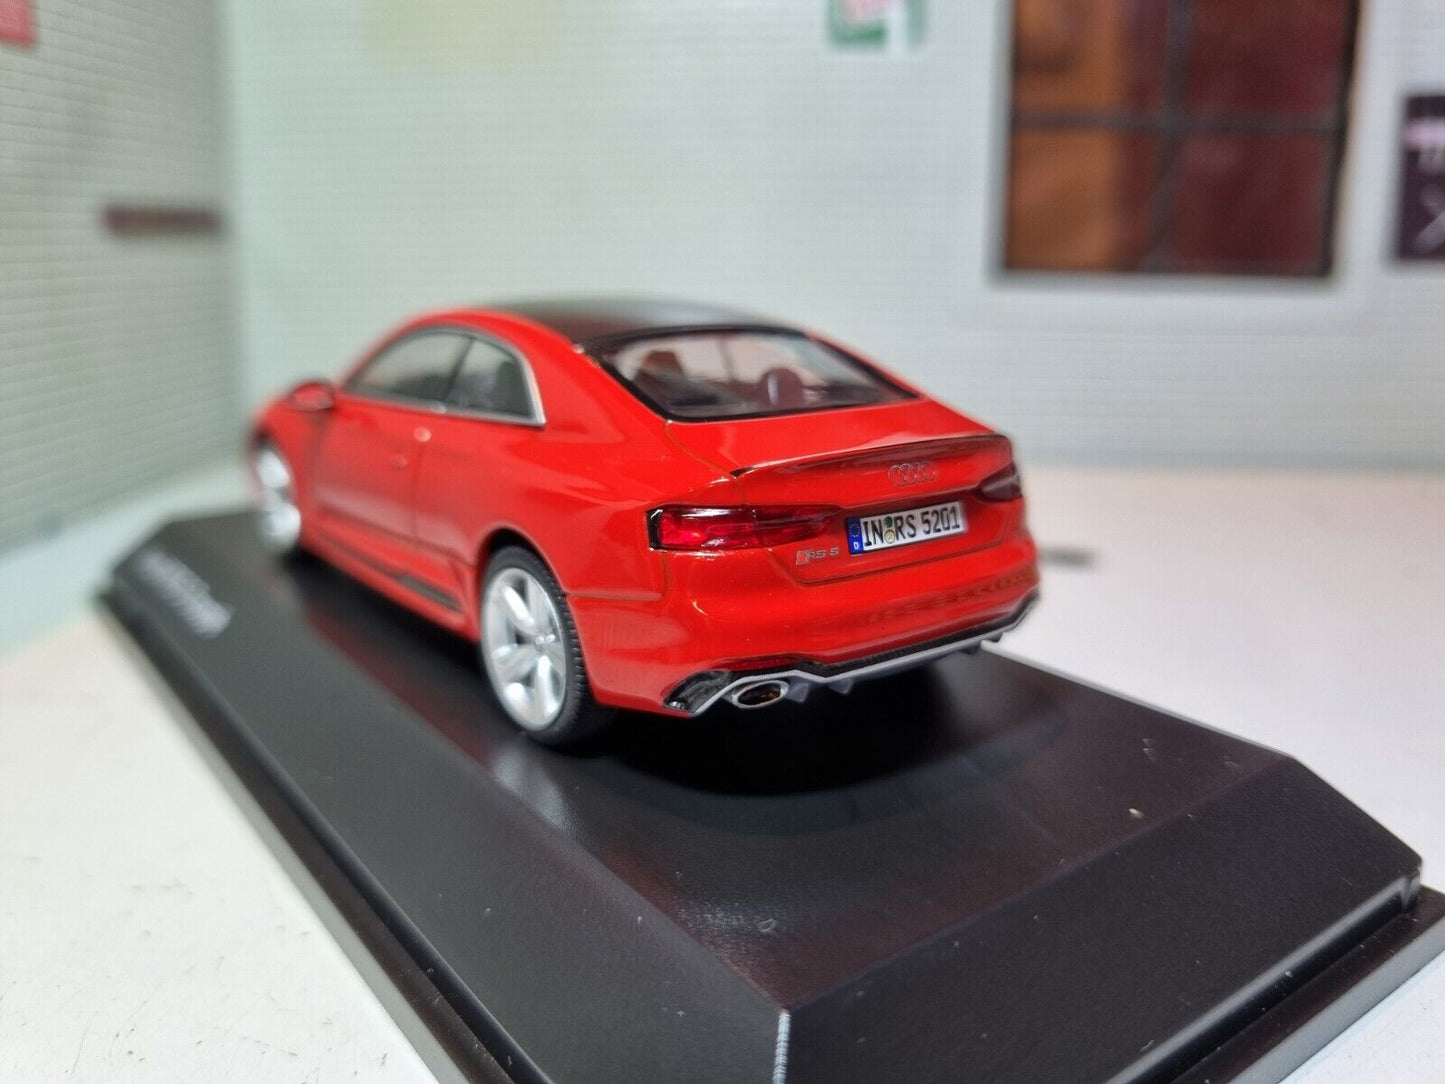 Audi 2017 RS5 Coupé Ex Concessionnaire Présentoir 1:43